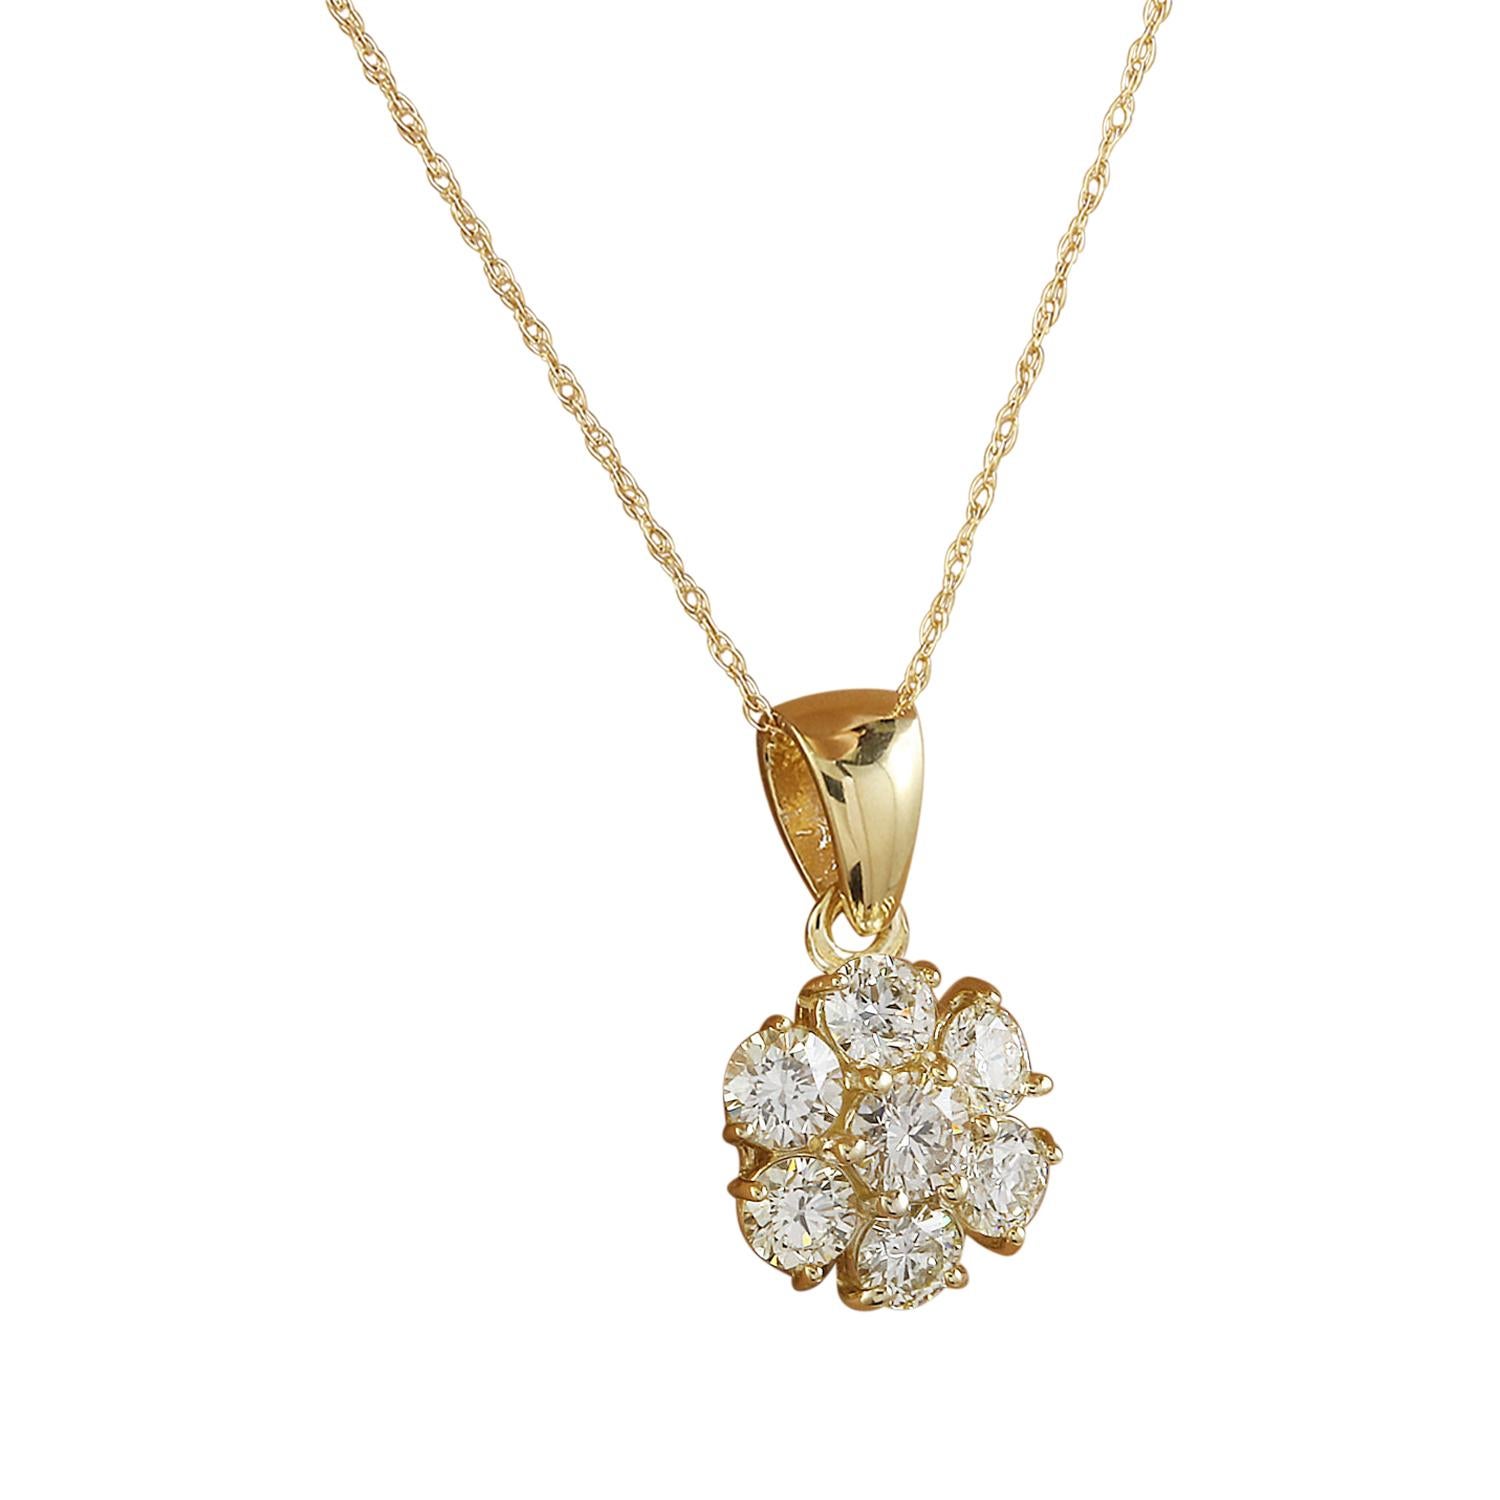 Wir präsentieren unsere elegante 0,70 Karat Naturdiamanten-Halskette aus 14 Karat Gelbgold. Diese Halskette aus geprägtem 14-karätigem Weißgold hat ein Gesamtgewicht von 1,4 Gramm und garantiert Qualität und Komfort. Die Halskette, die das Dekolleté